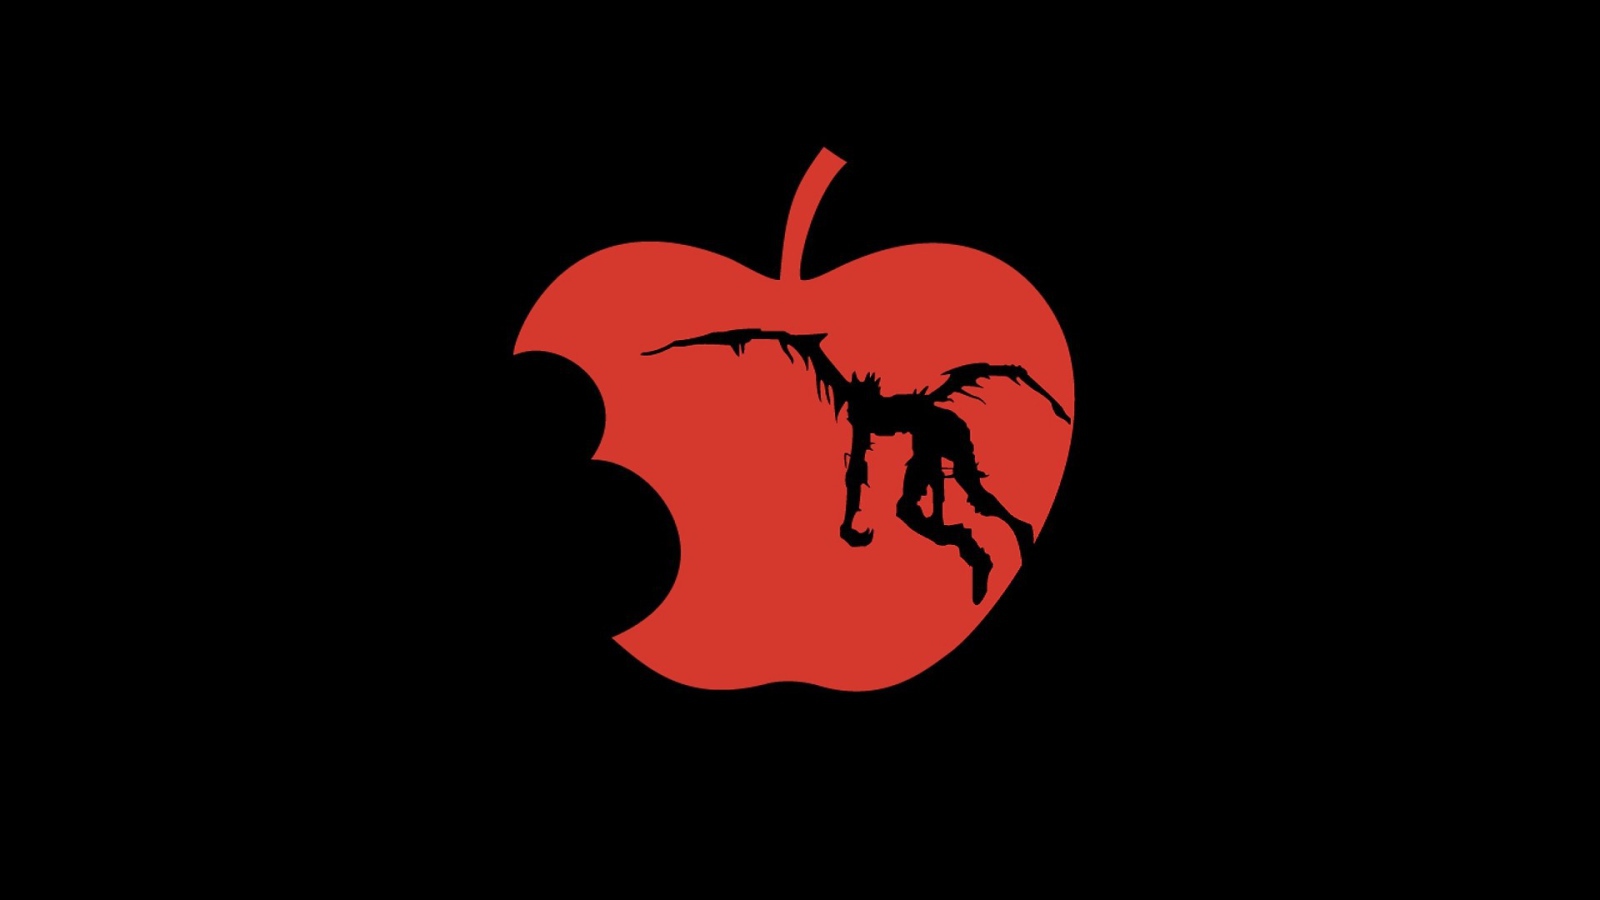 Испорченное красное яблоко, черный фон